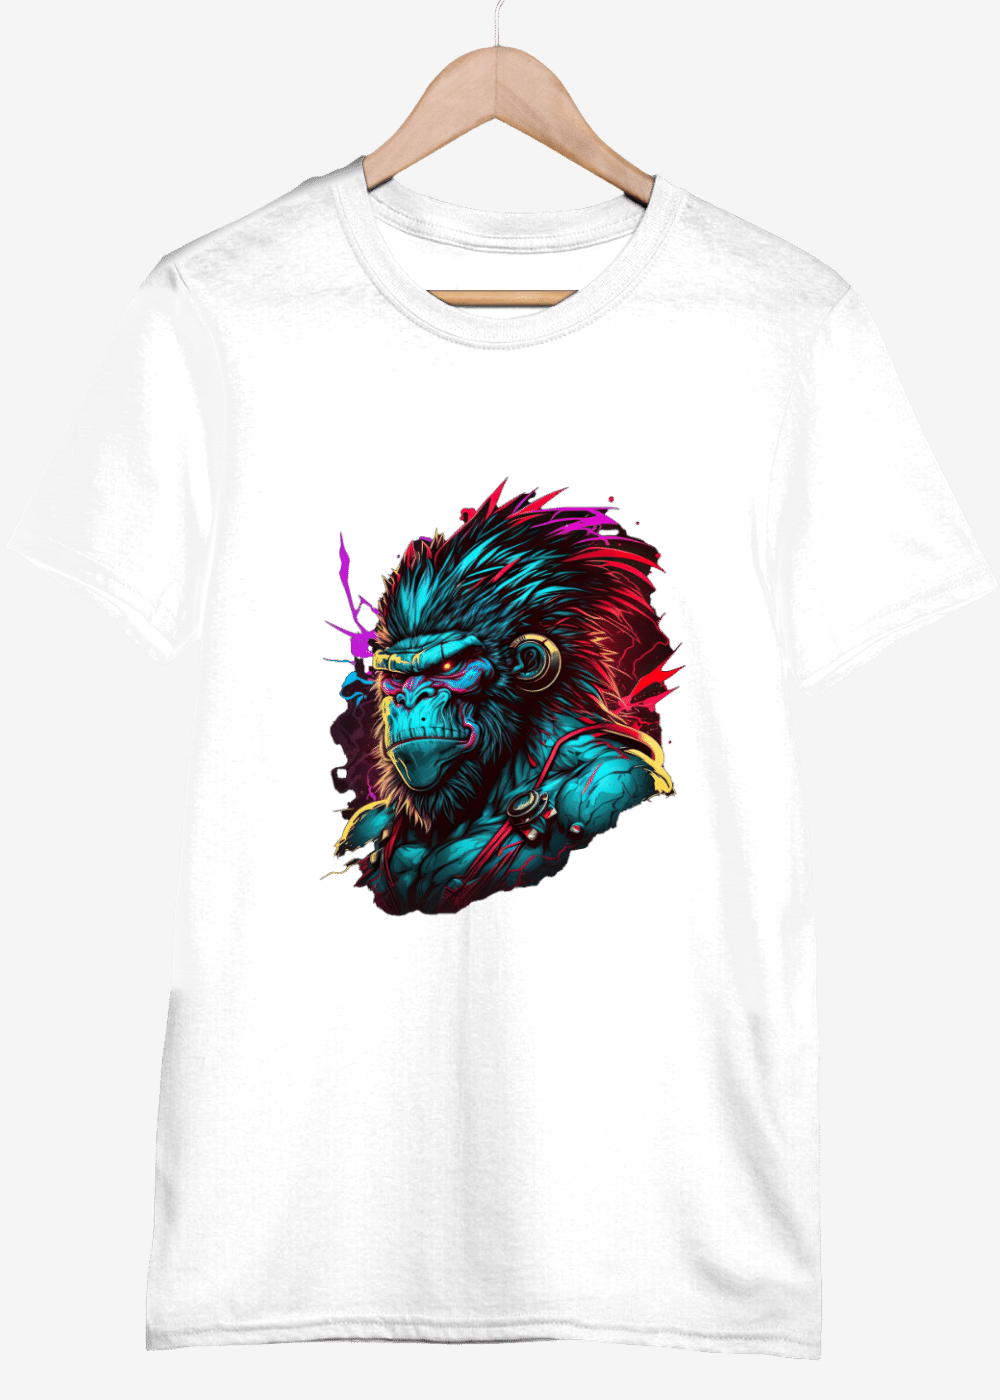 Rave Gorilla Animal Print Black T-Shirt for Men